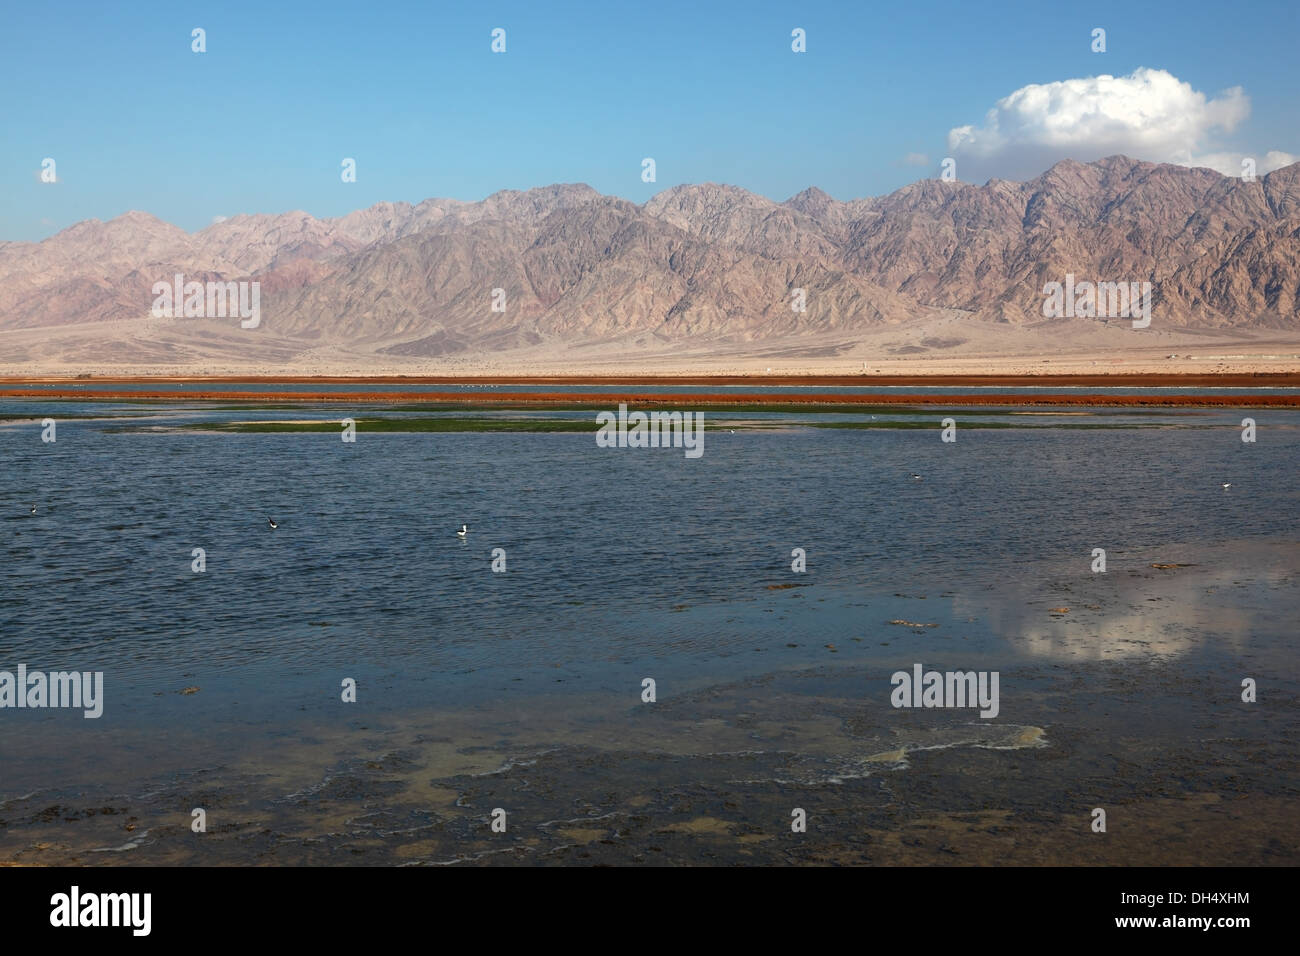 Superficial reservoir in desert Stock Photo